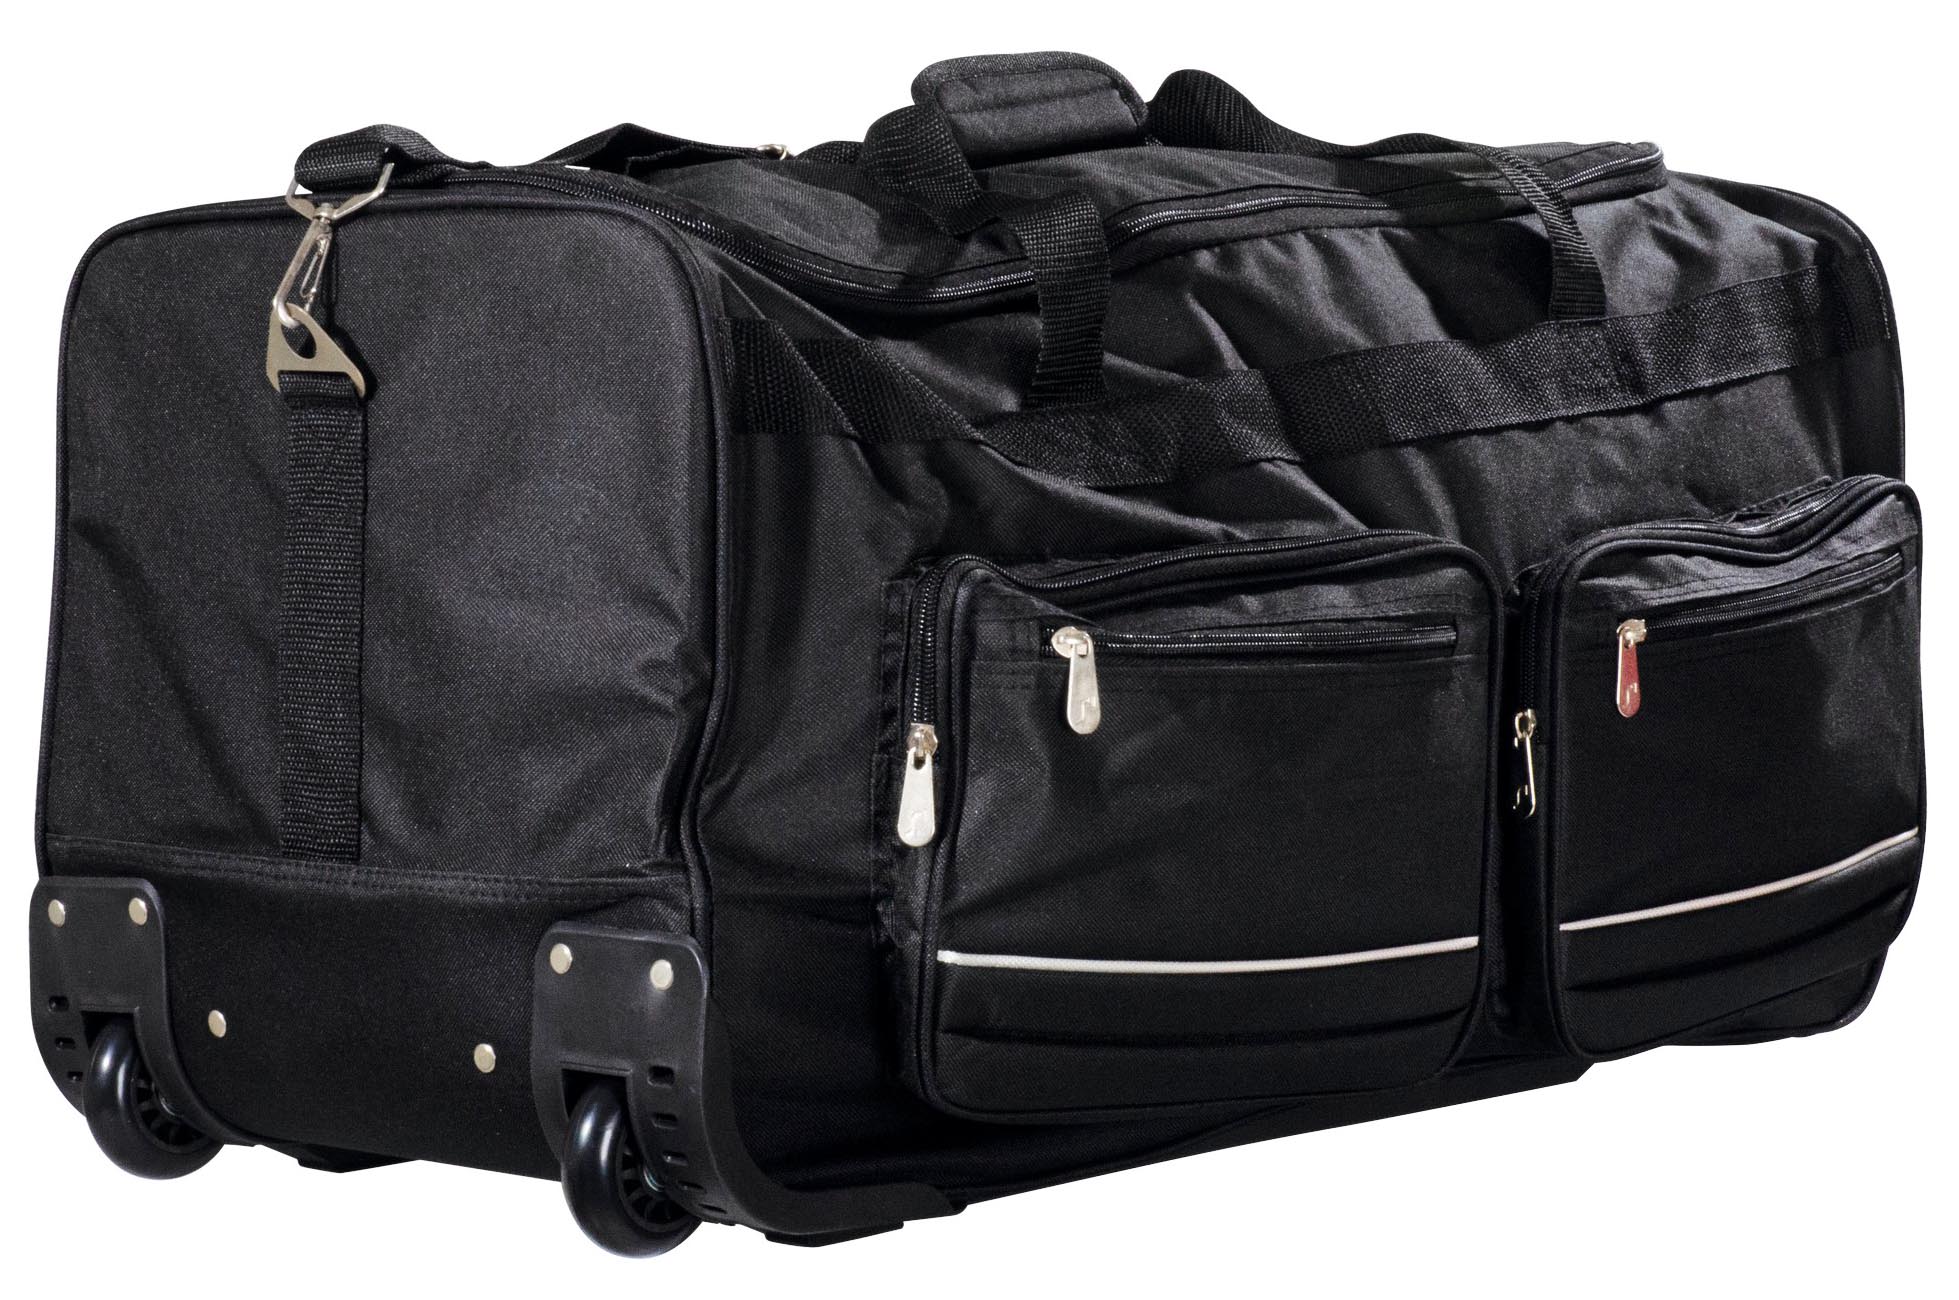 Duffel mochila con ruedas de bolsas de deporte - China Duffel Bag y Trolley  bolsa precio